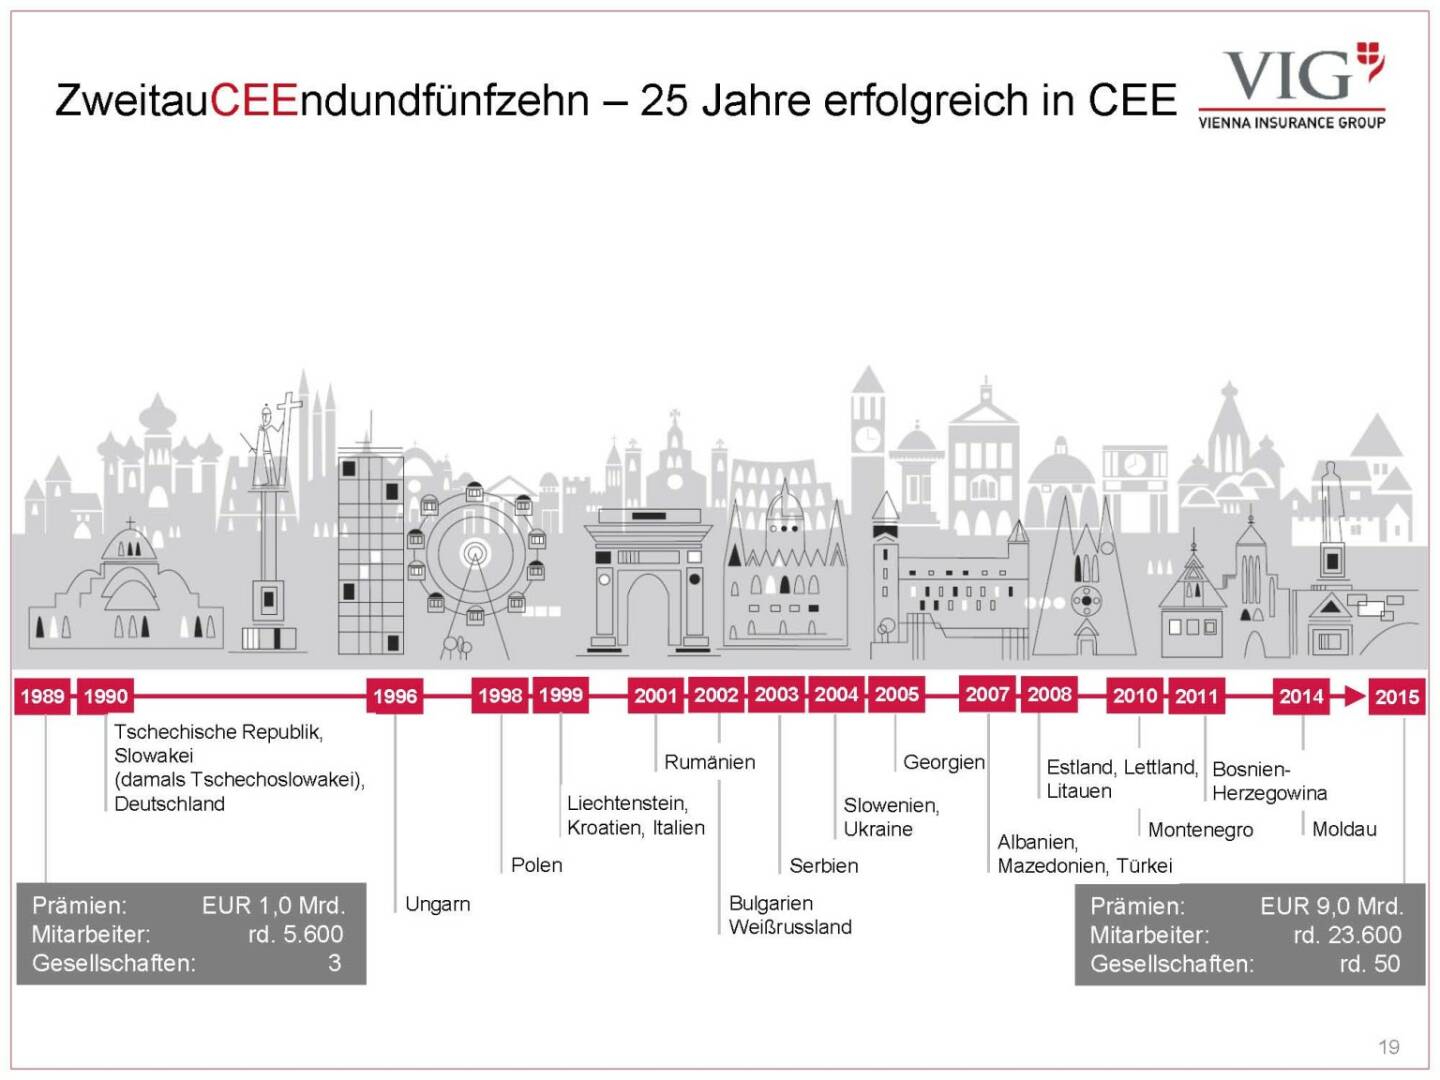 Vienna Insurance Group - ZweitauCEEndundfünfzehn – 25 Jahre erfolgreich in CEE